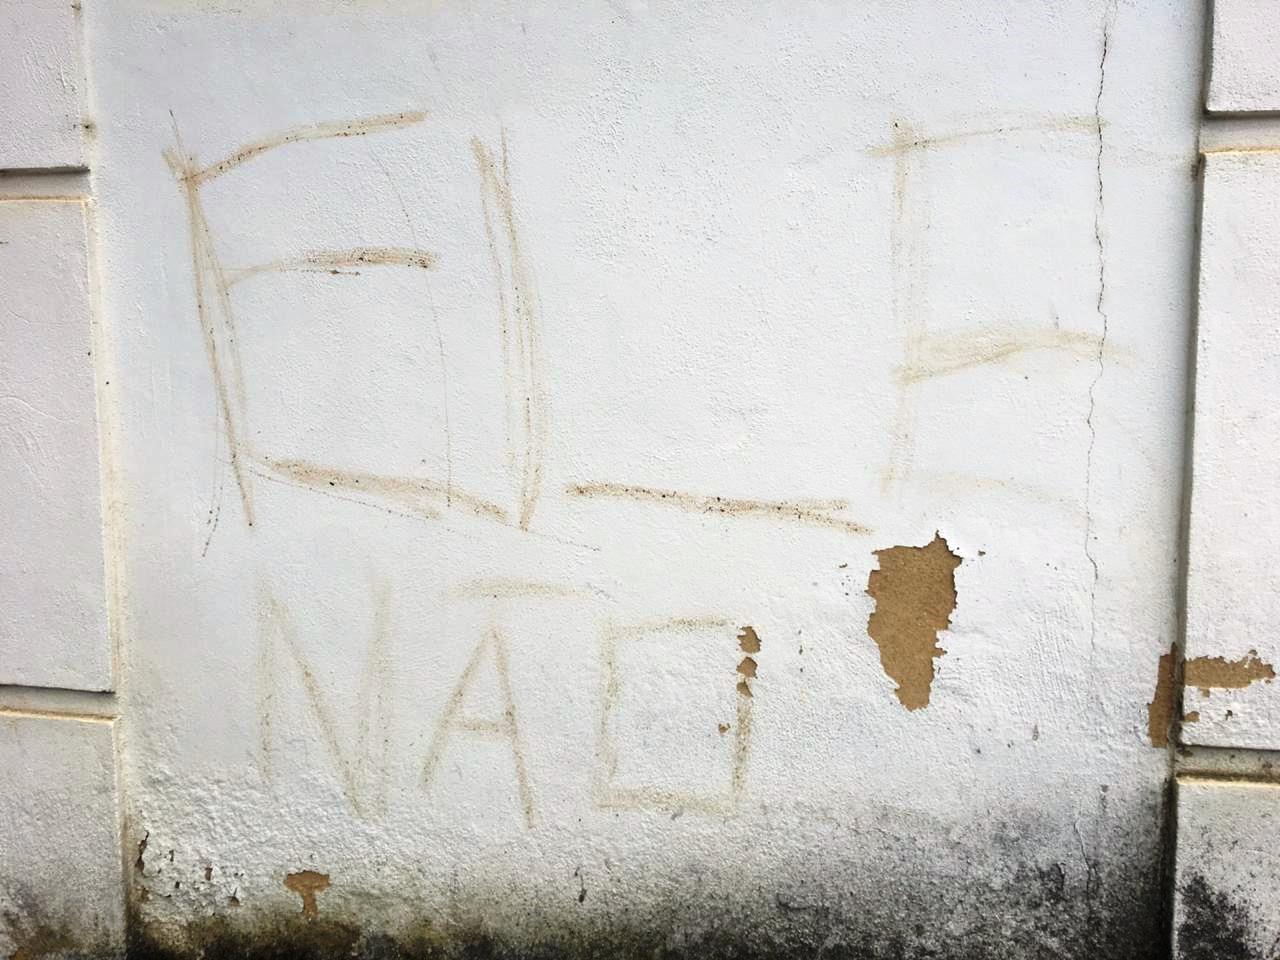 A hashtag #elenao riscada em um muro do distrito de São Pedro (Fotos divulgadas pela Polícia Civil)